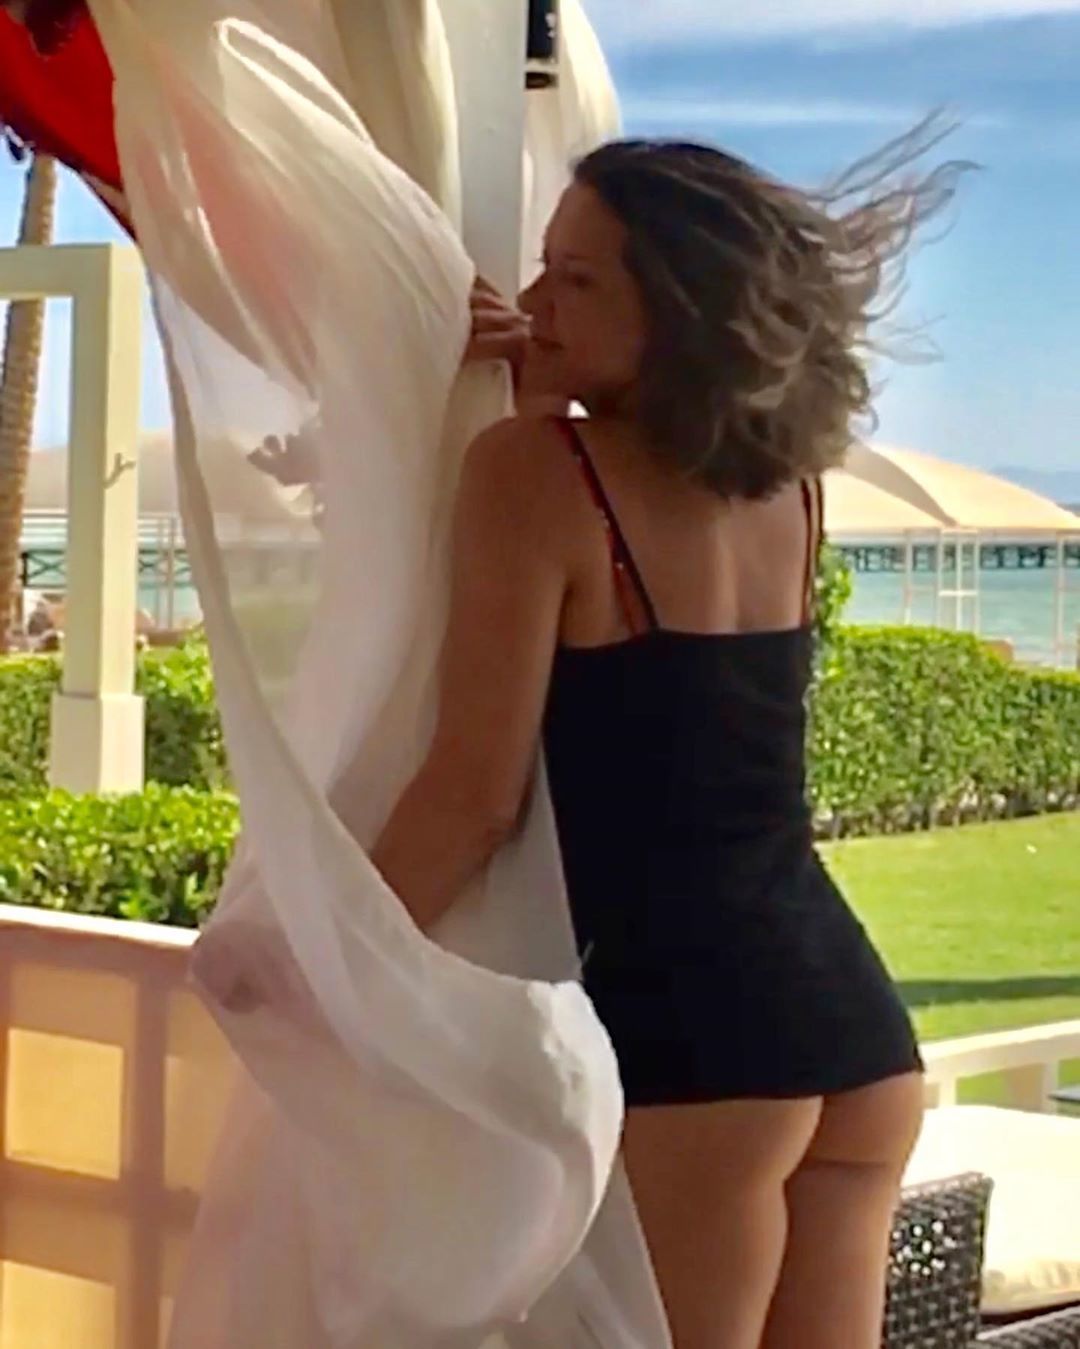 Могилевська виклала пікантне відео з оголеними сідницями. Під час відпочинку в Єгипті Могилевська опублікувала в Instagram спокусливий ролик, де позувала в сексуальному вбранні.